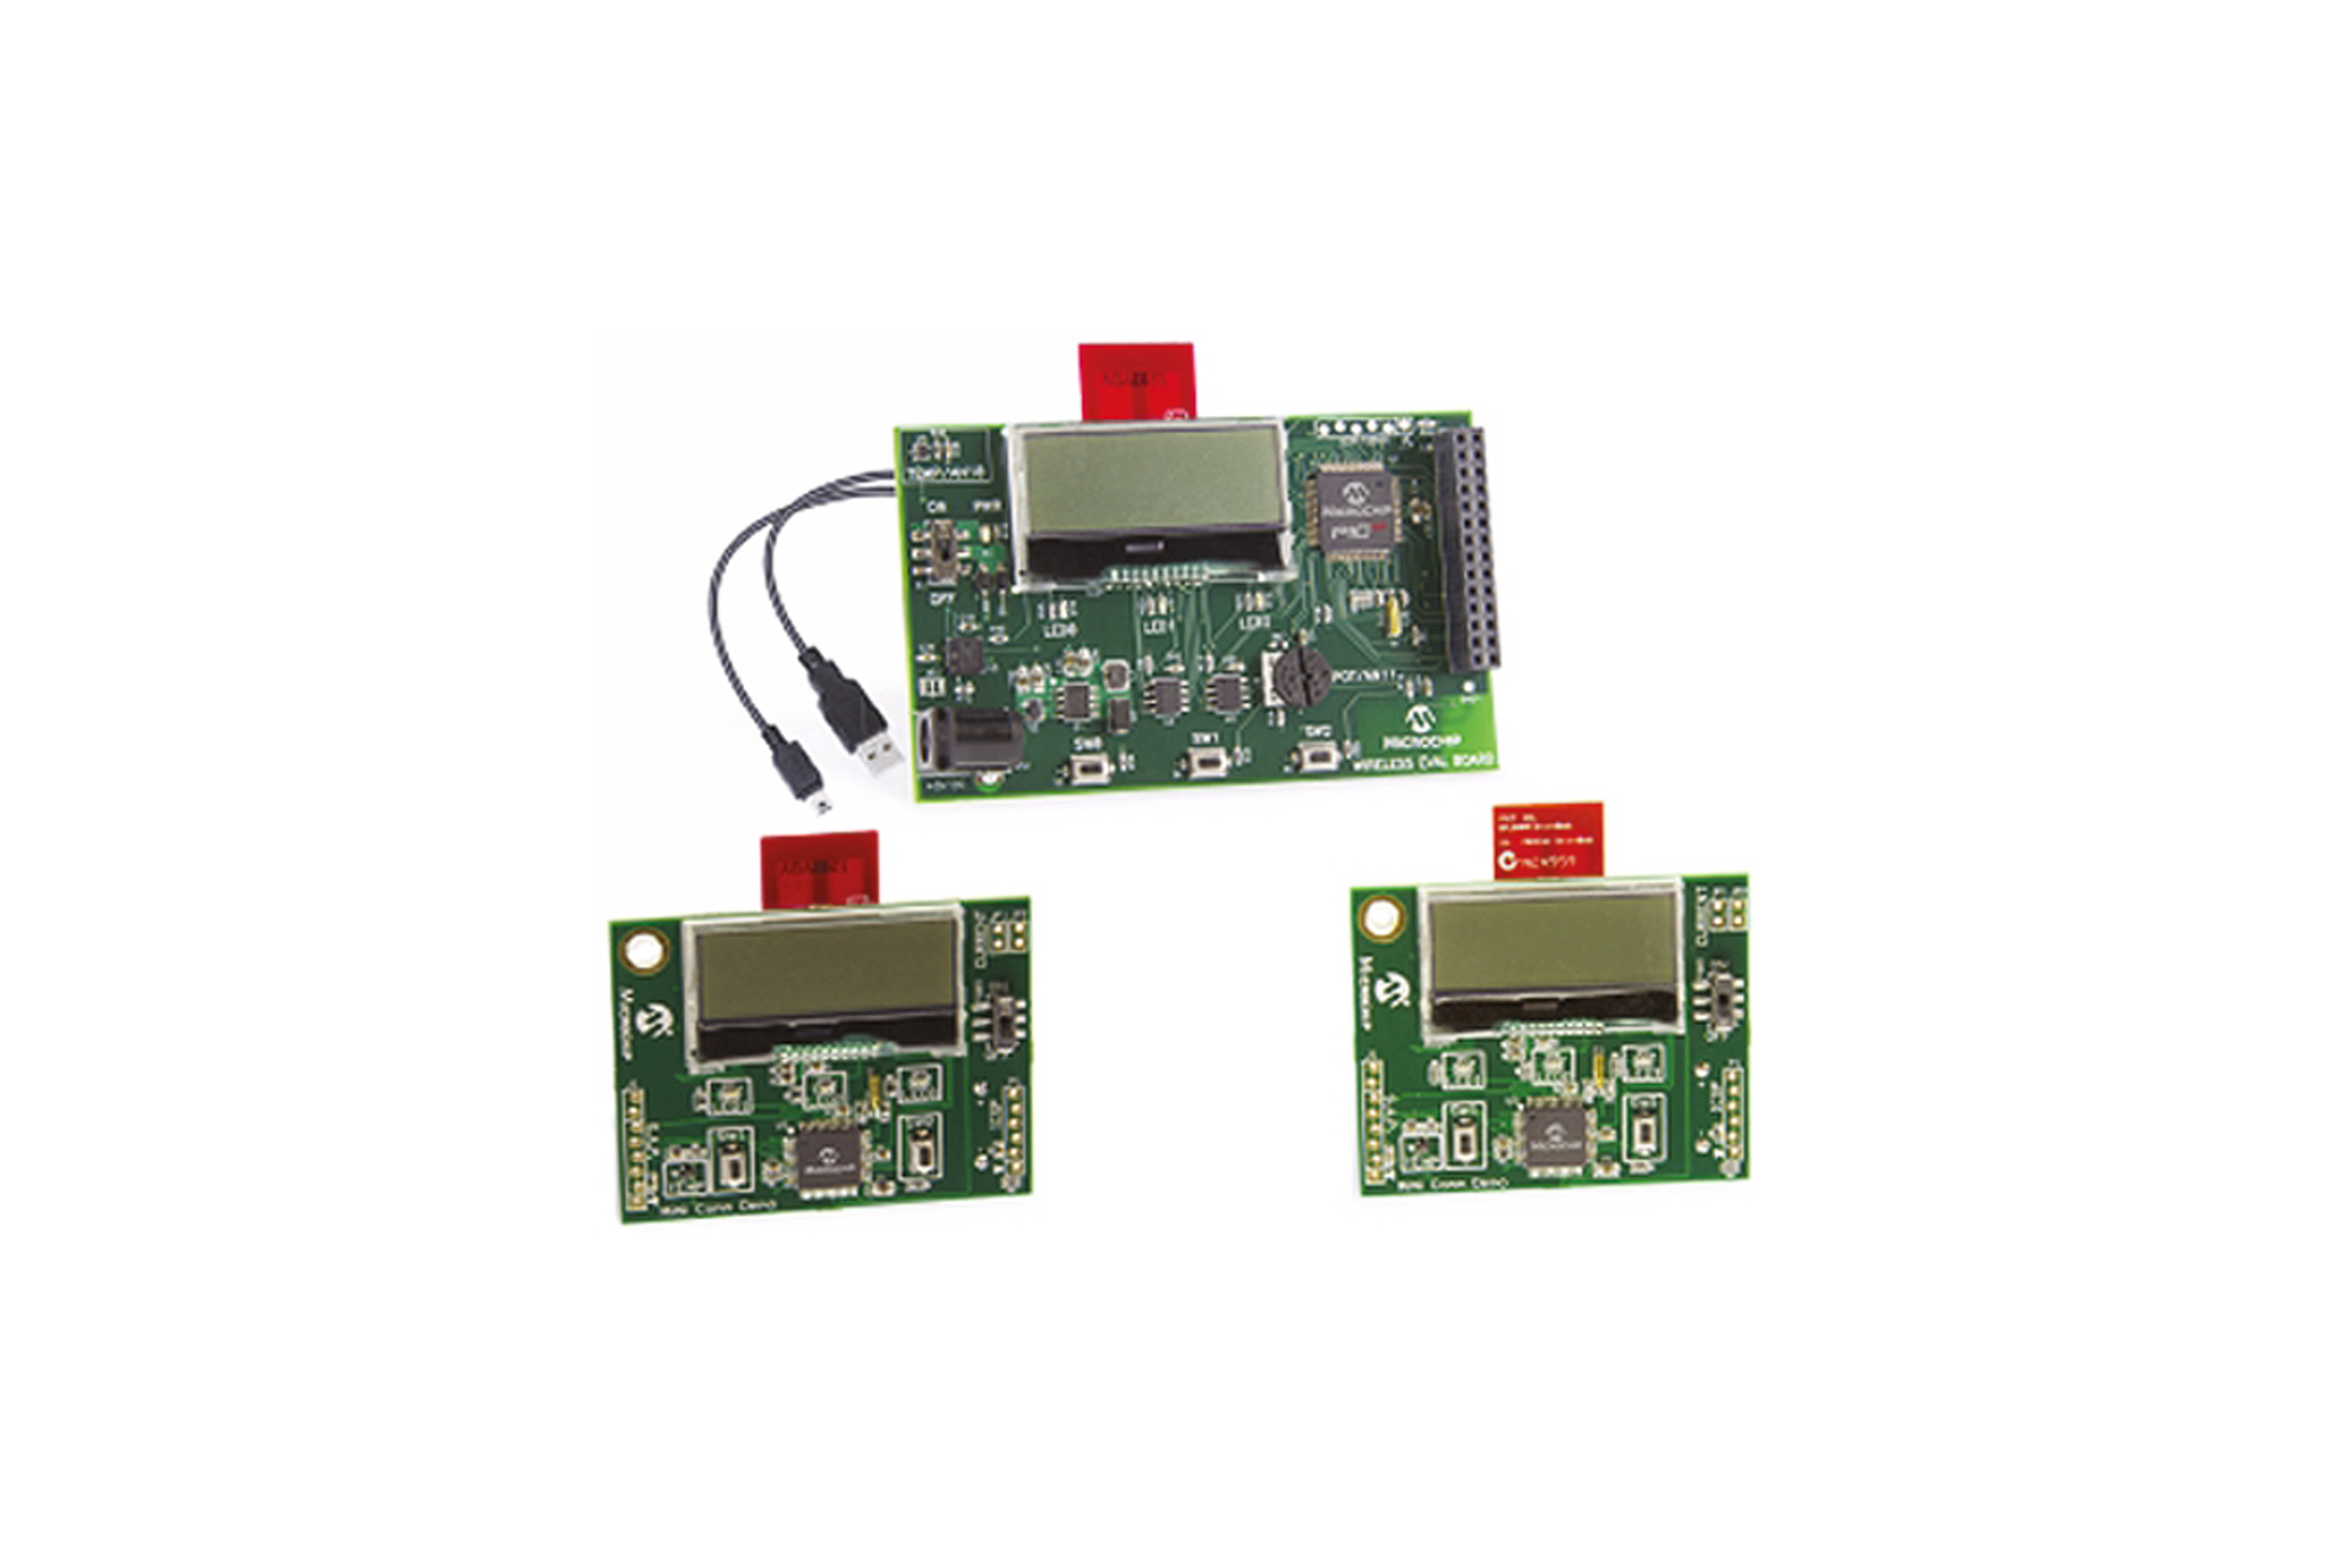 Microchip Miwi / WiFi 2.4Ghz Demonstration Kit For Mrf24J/W